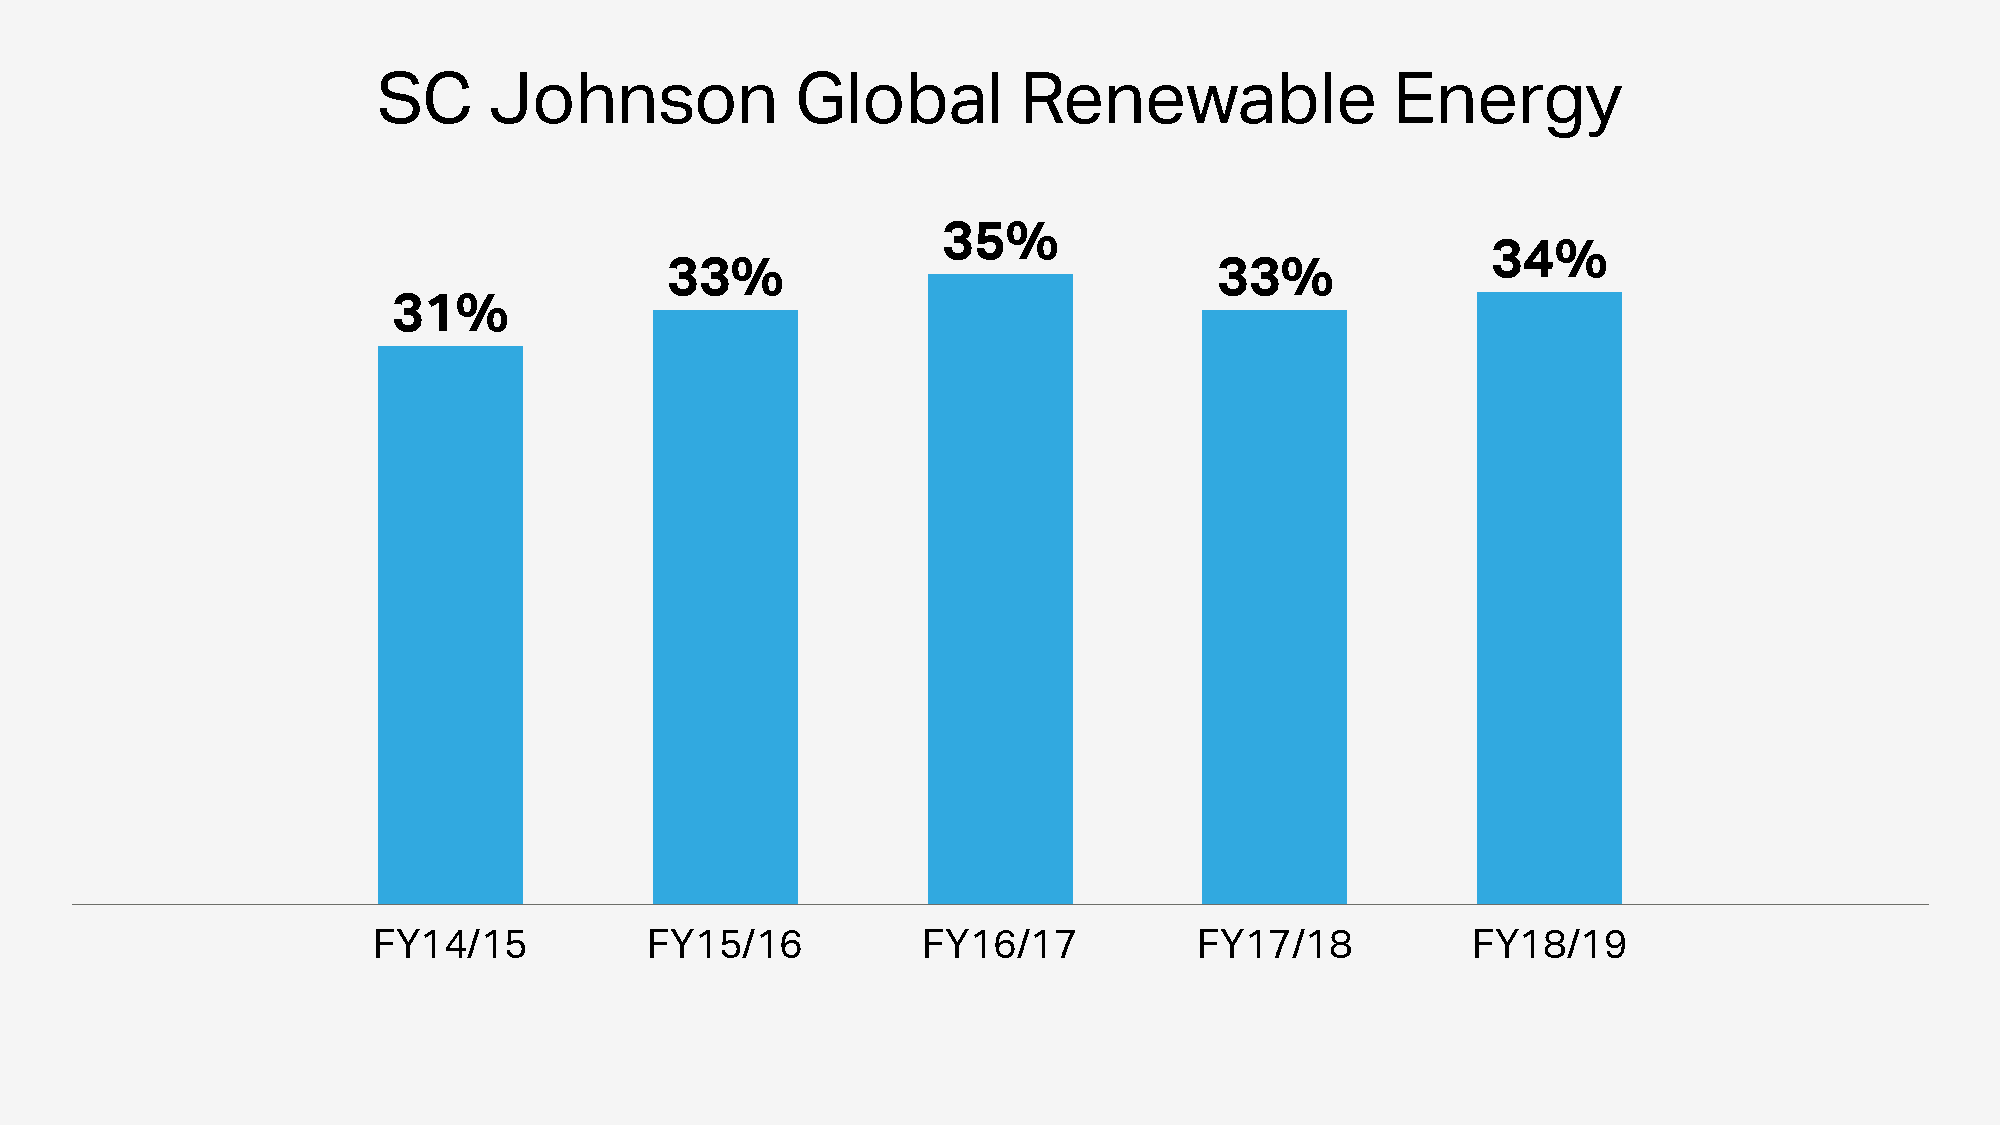 Energía renovable global de SC Johnson a lo largo de los años